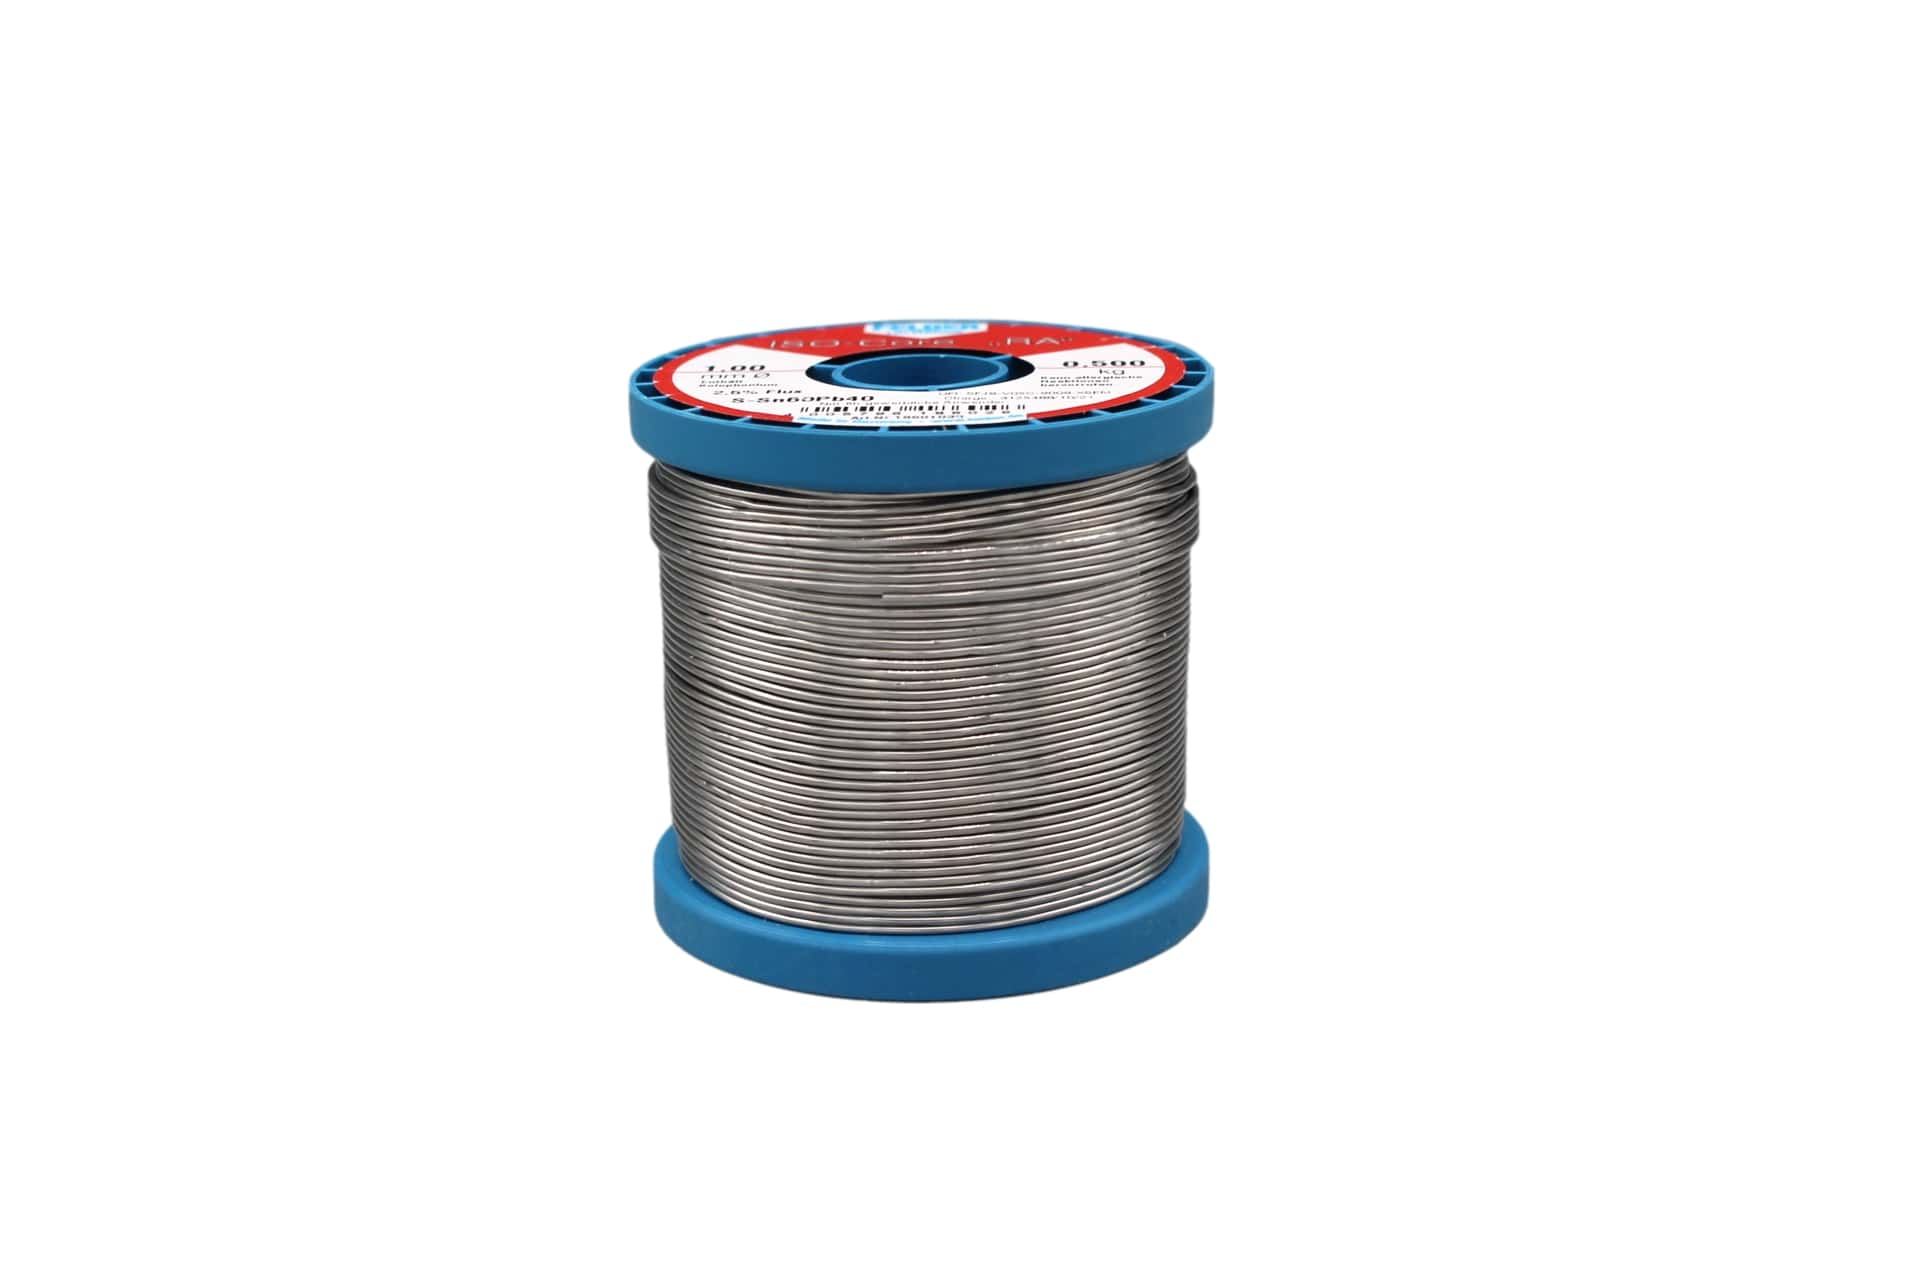 18601030 Felder solder wire, leaded, Sn60Pb40, 1 mm, 500g, roll